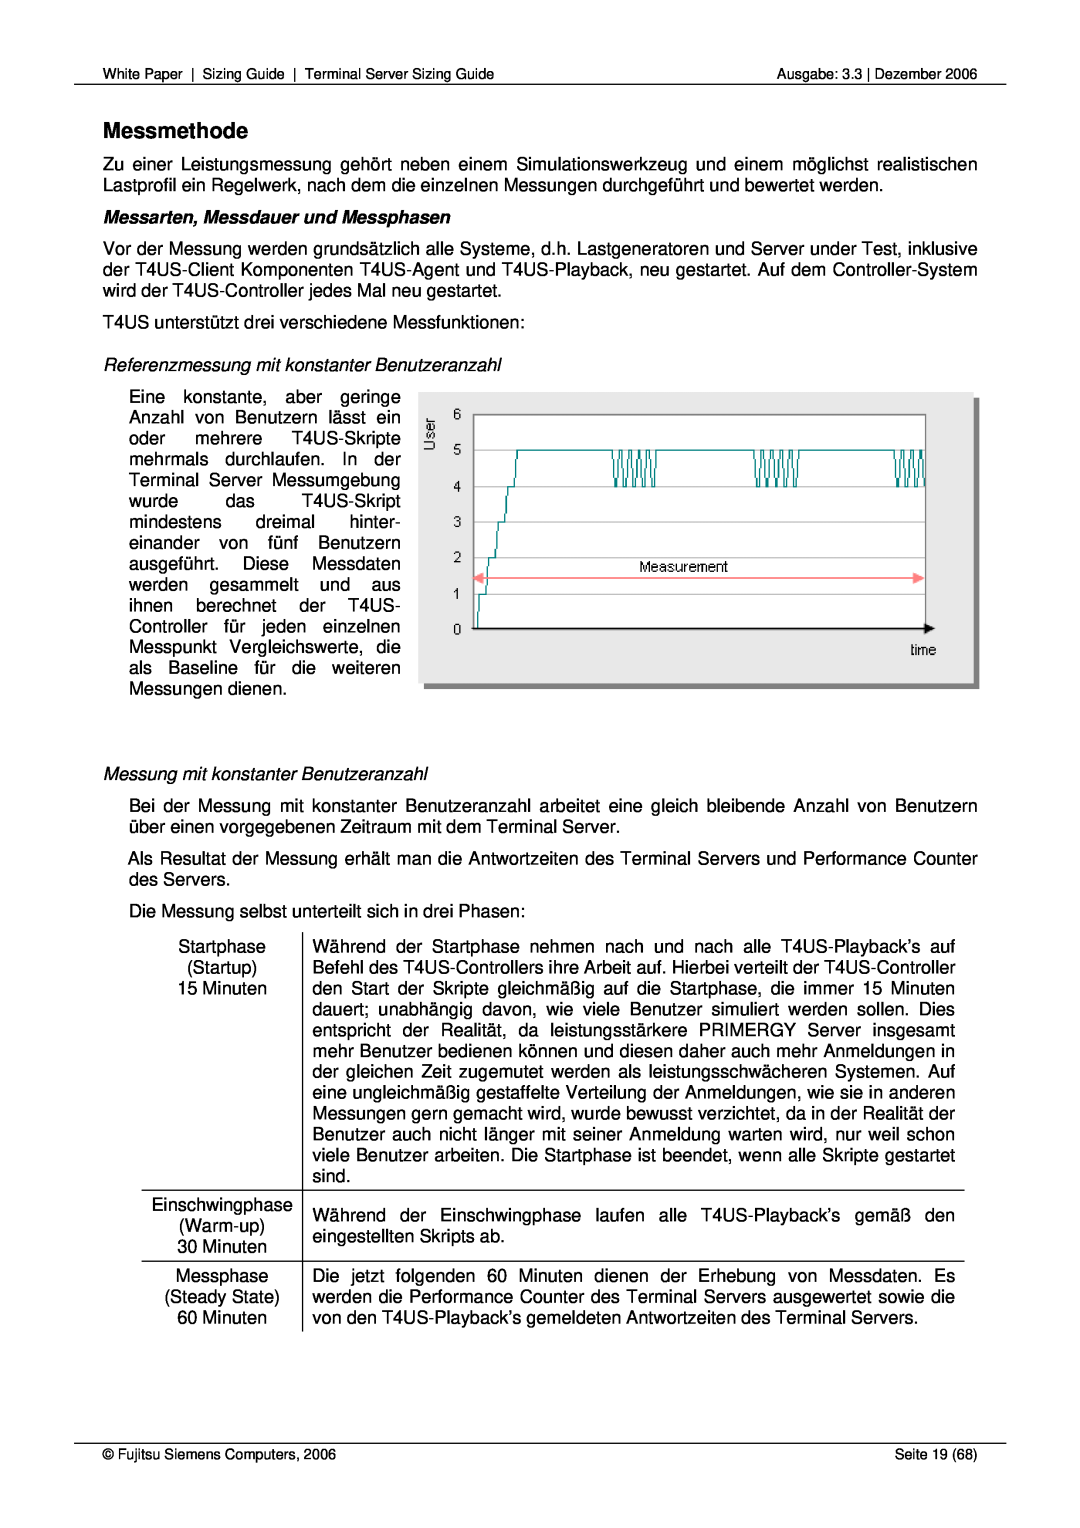 Fujitsu 68 manual Messmethode, Messarten, Messdauer und Messphasen, Referenzmessung mit konstanter Benutzeranzahl 